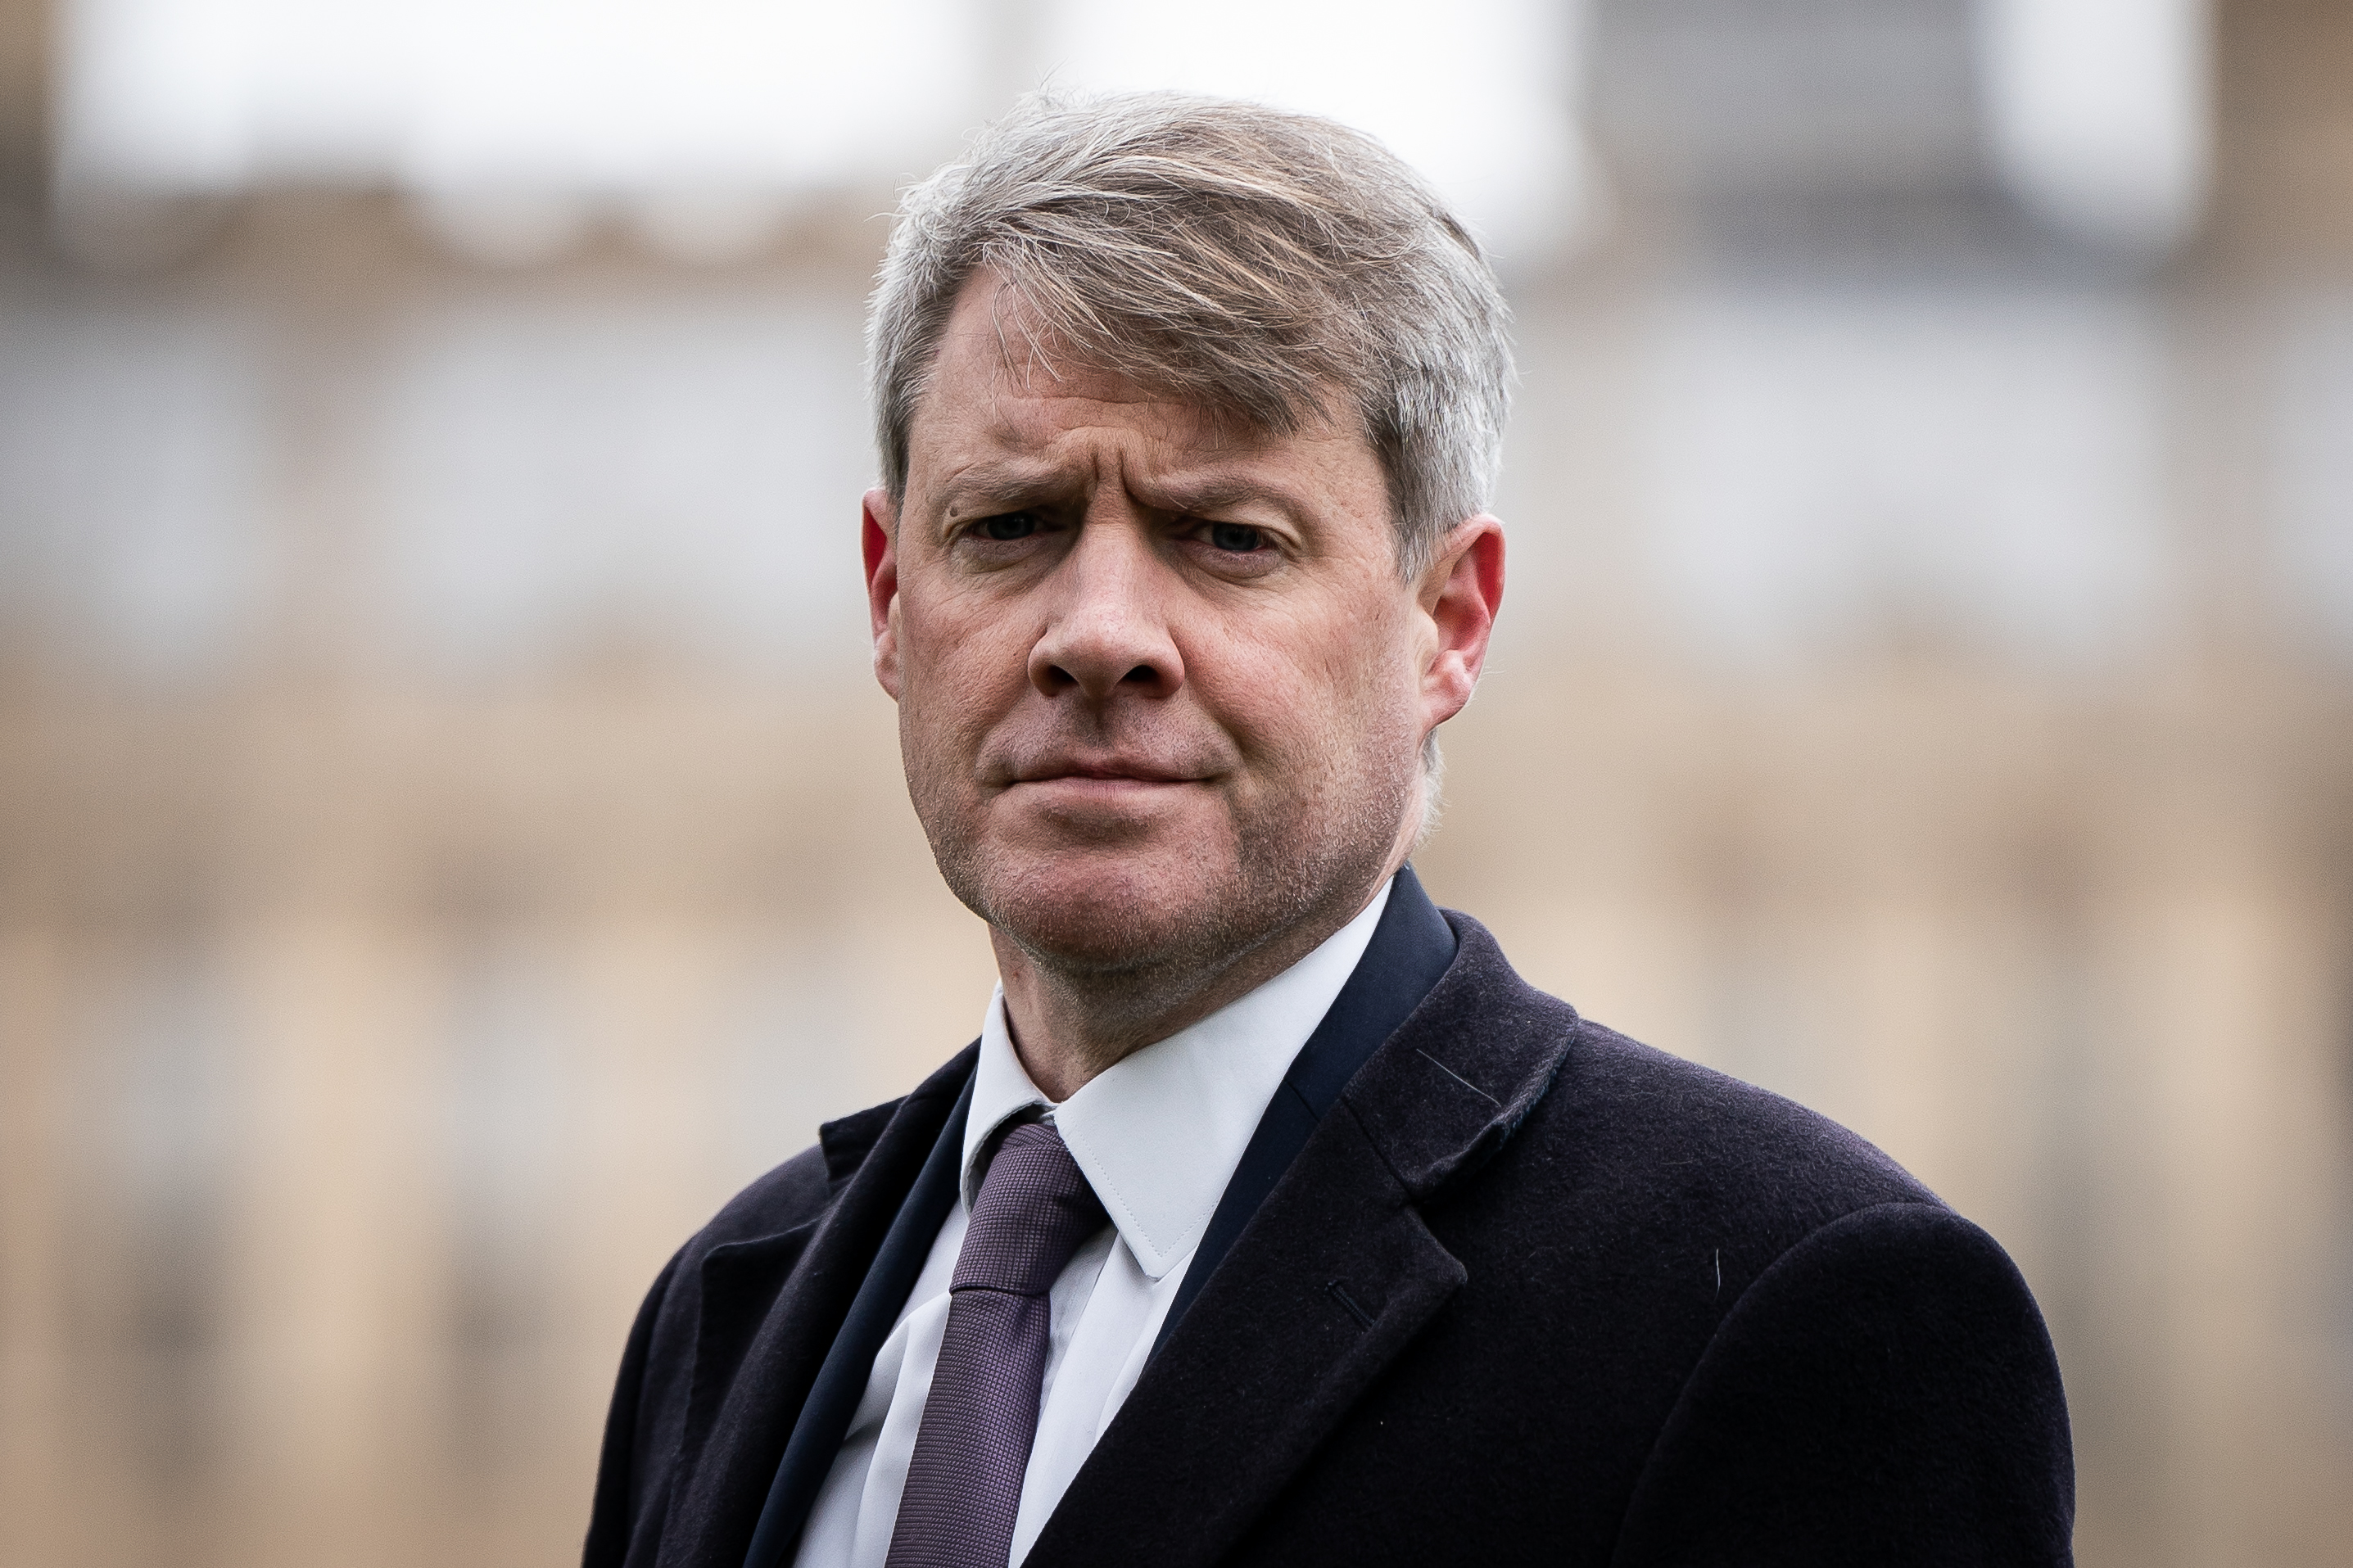 Chris Skidmore schied diese Woche aus dem Parlament aus, nachdem er angekündigt hatte, dass er wegen der Pläne der Regierung, neue Öl- und Gaslizenzen zu erteilen, aus der Partei der Torys zurücktreten werde